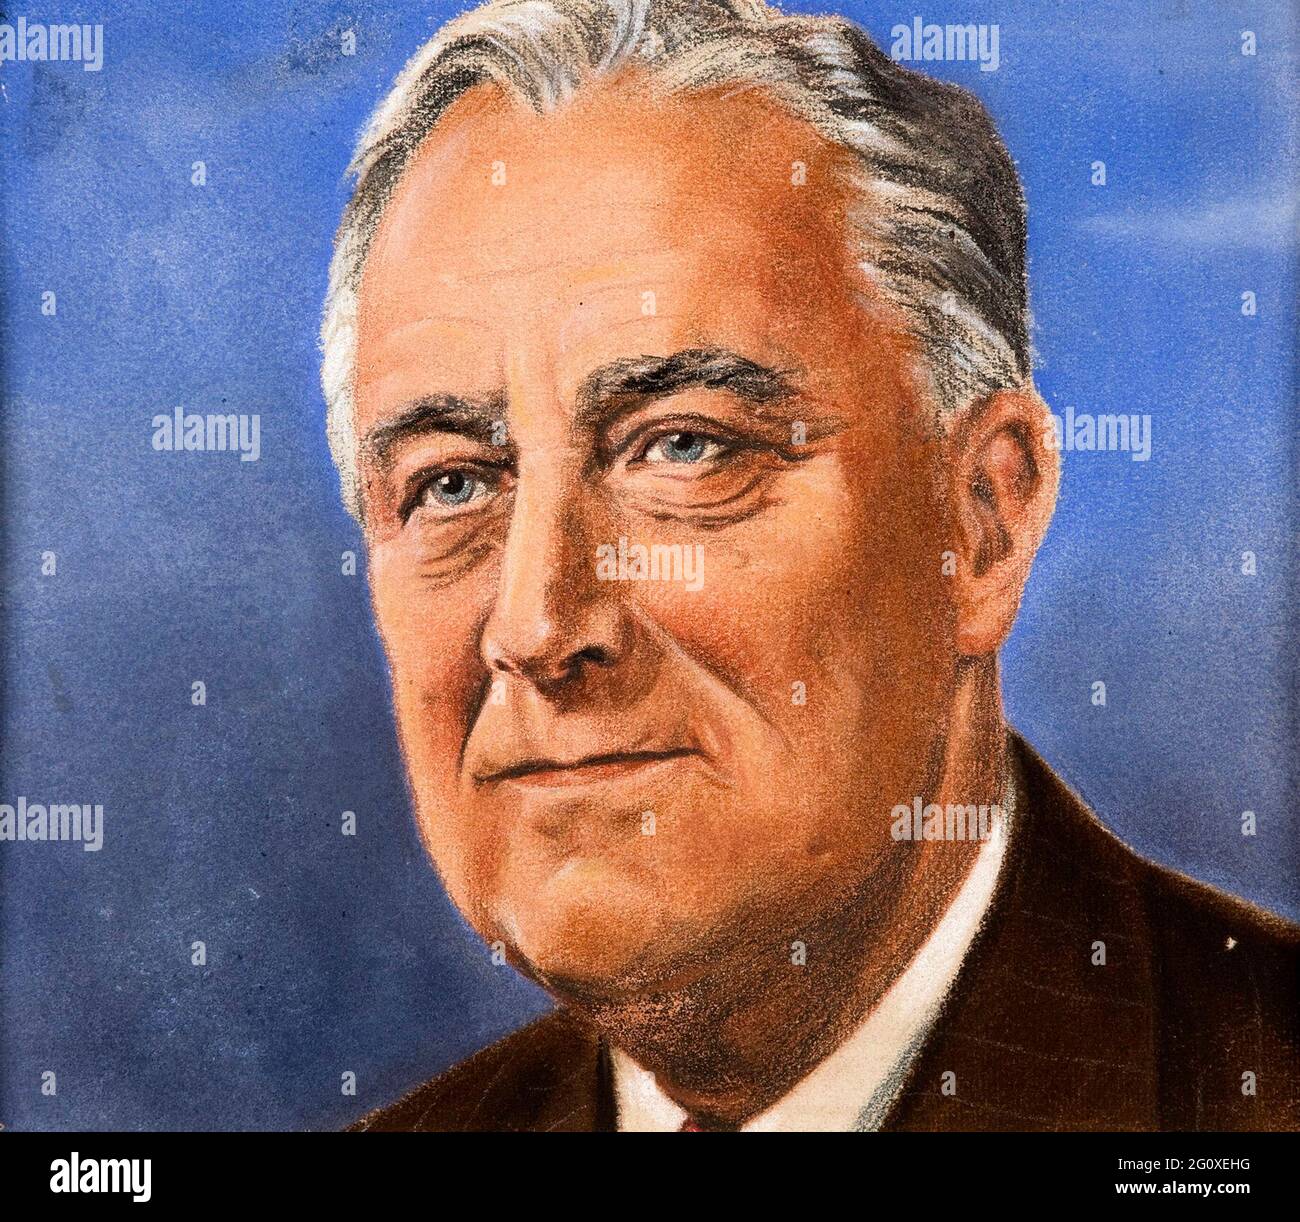 Un portrait de Franklin Roosevelt dessiné pour le ministère de l'information du Royaume-Uni par l'artiste autrichien William Timym Banque D'Images